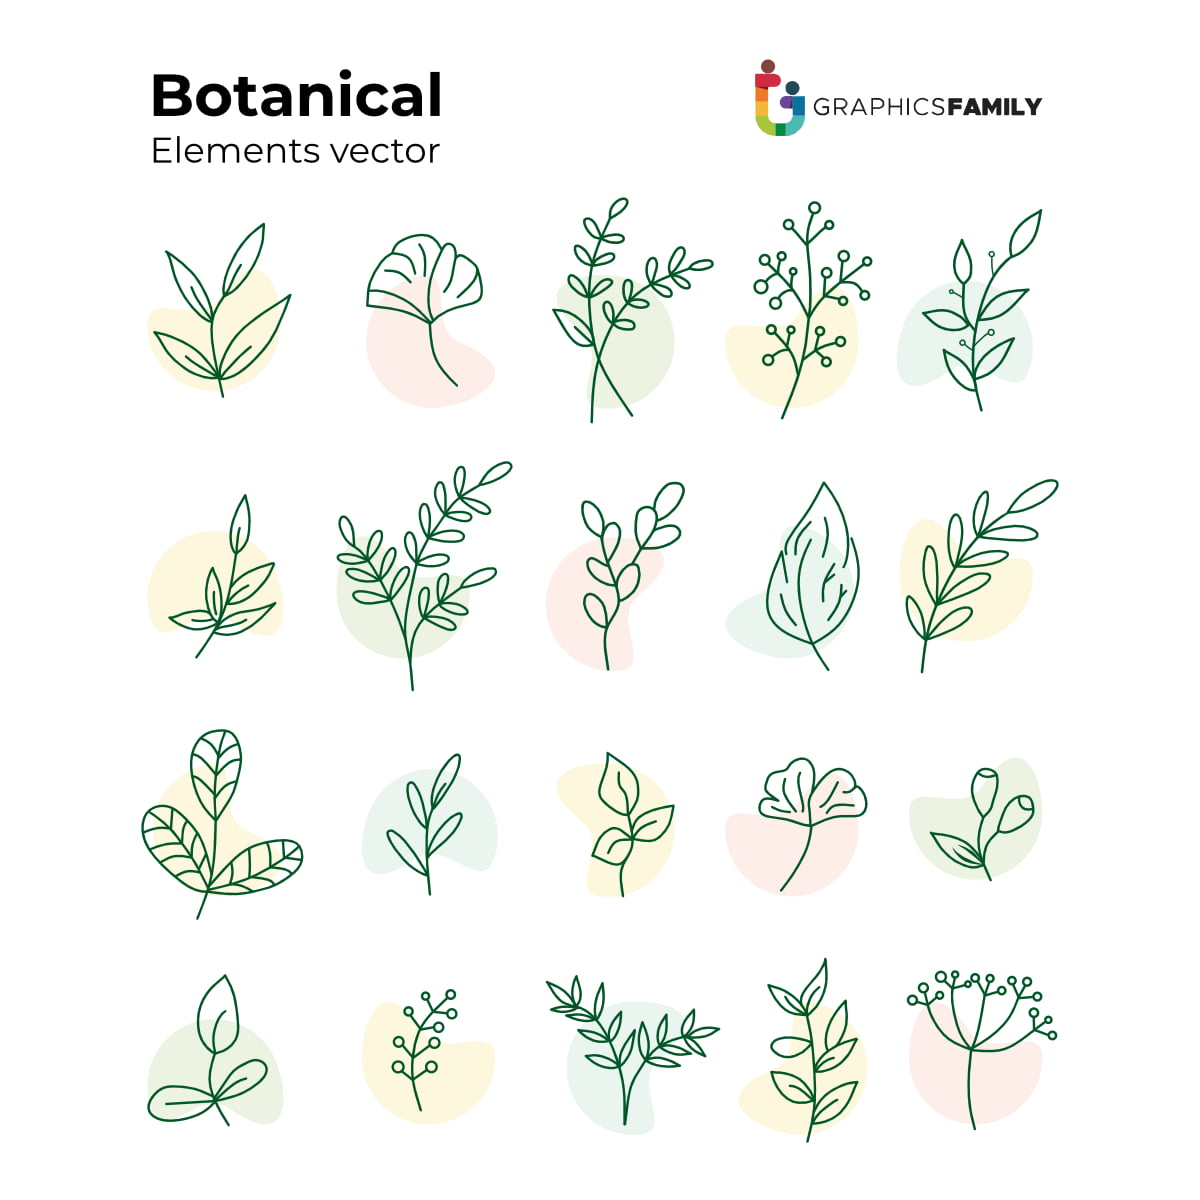 free vector botanical illustration download